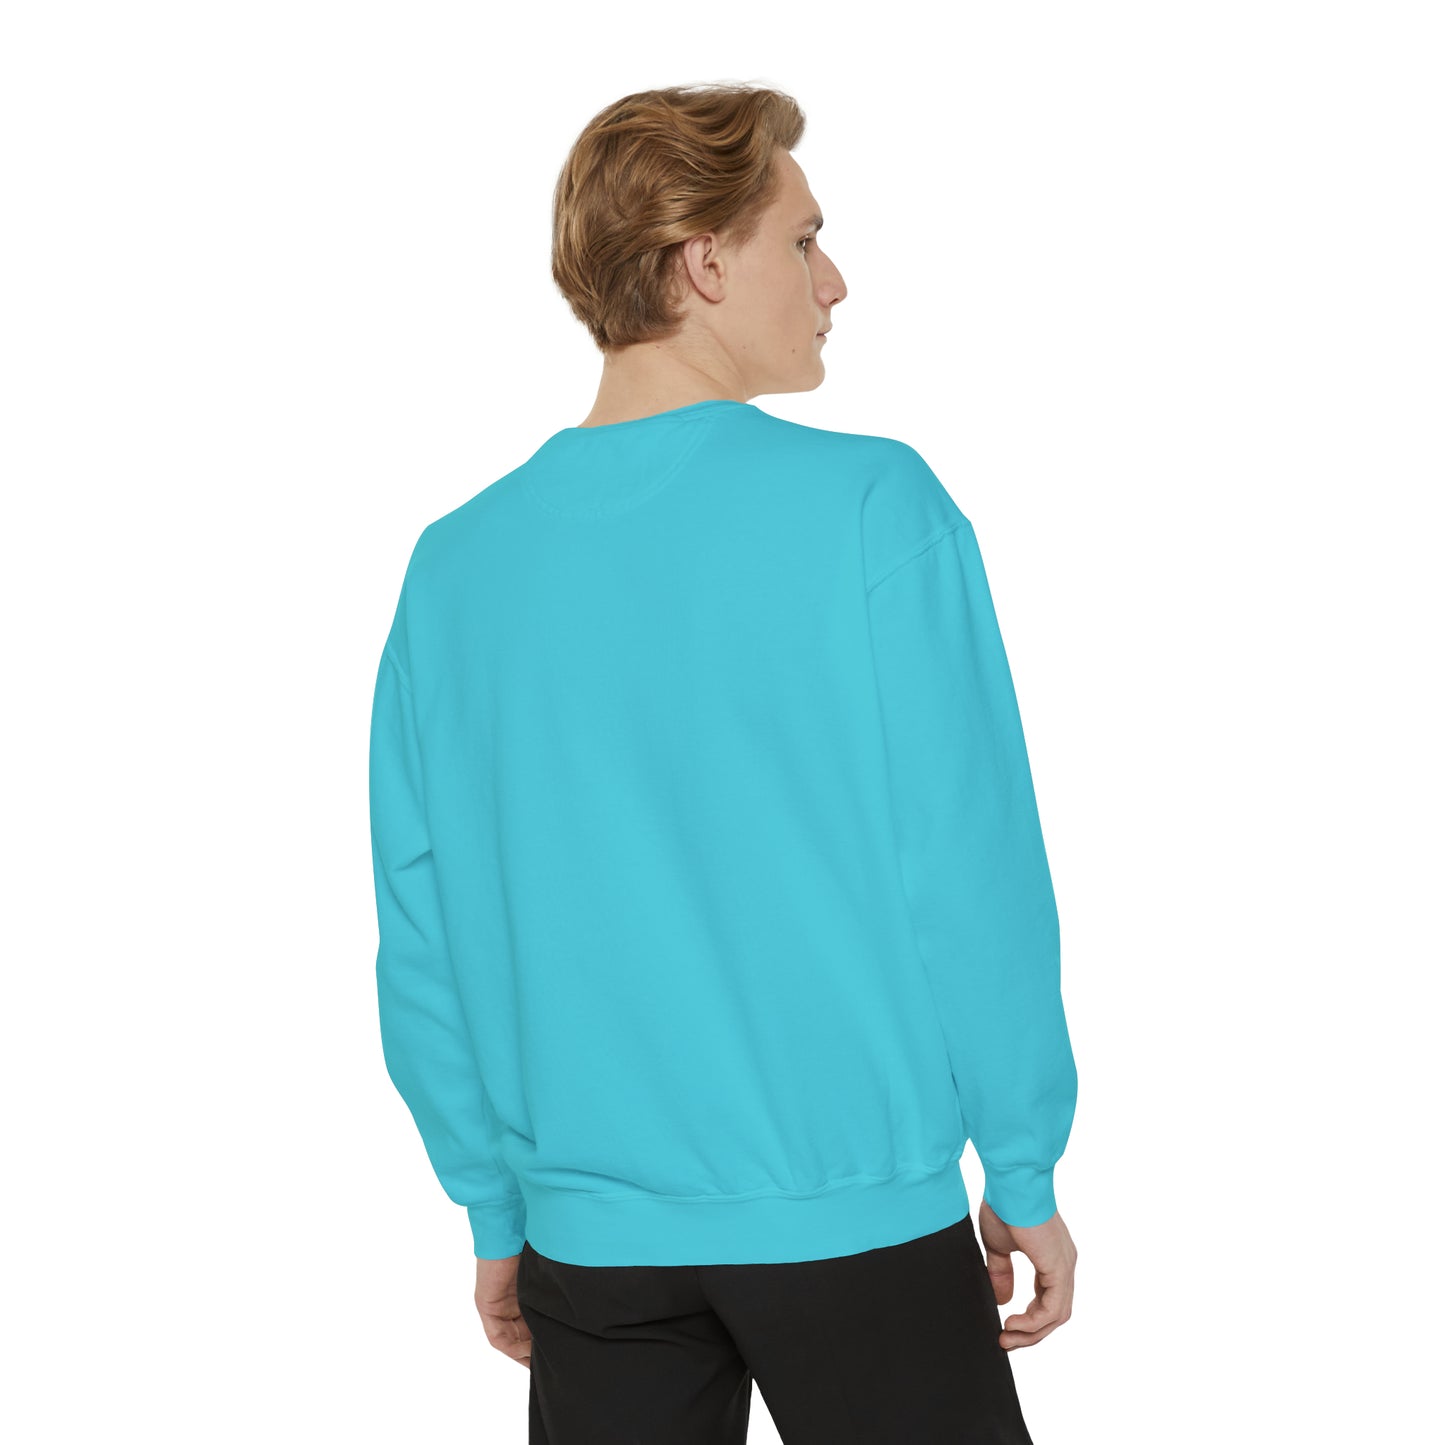 Pumpkin Skeletons Dancing, Comfort Colors, Crewneck, Unisex Garment-Dyed Sweatshirt